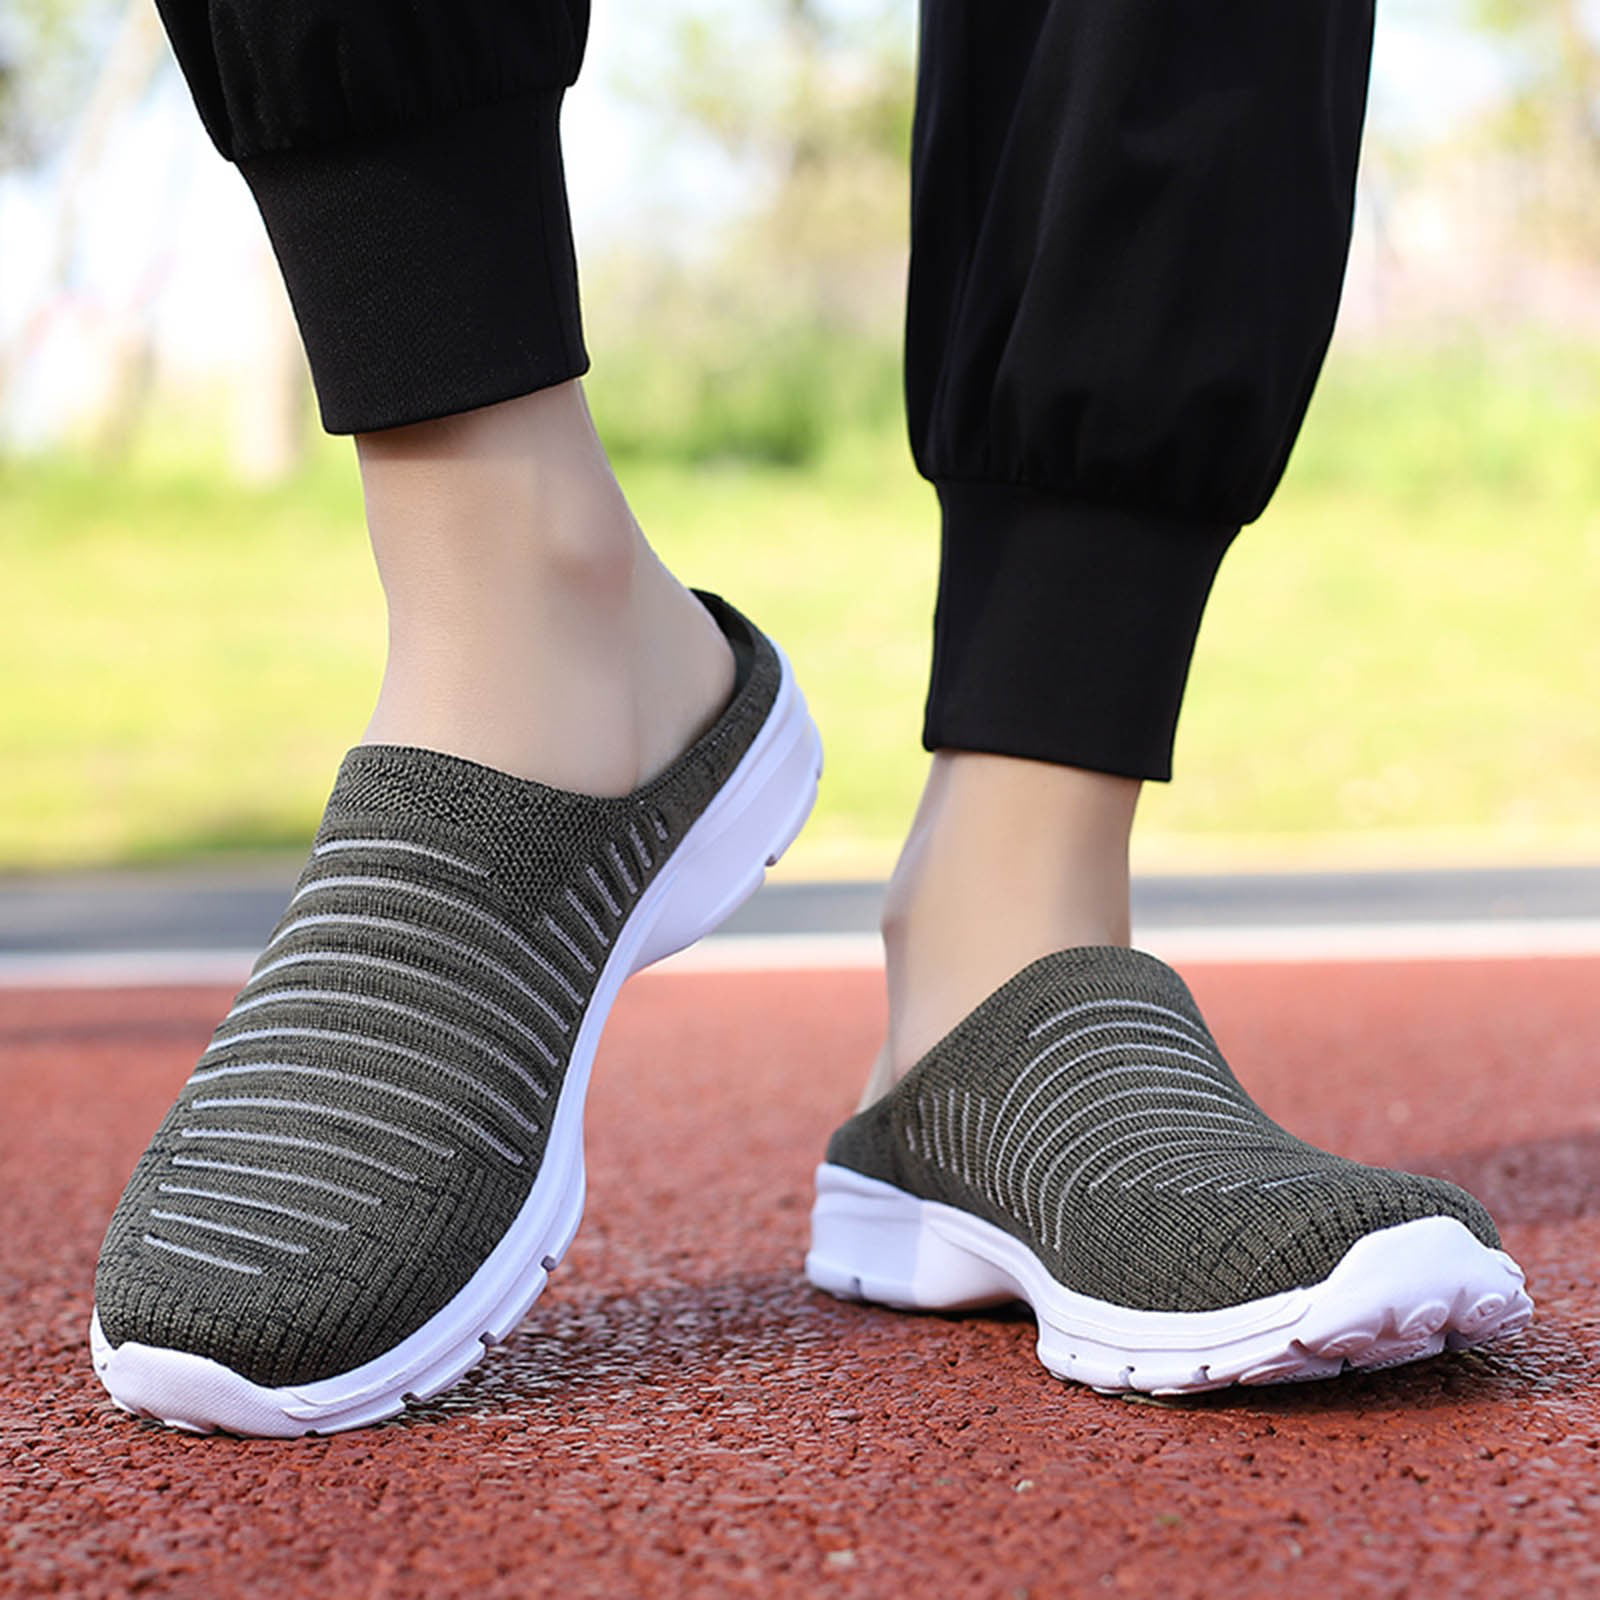  Womens Slip On WalkingShoes Non Slip Running Shoes